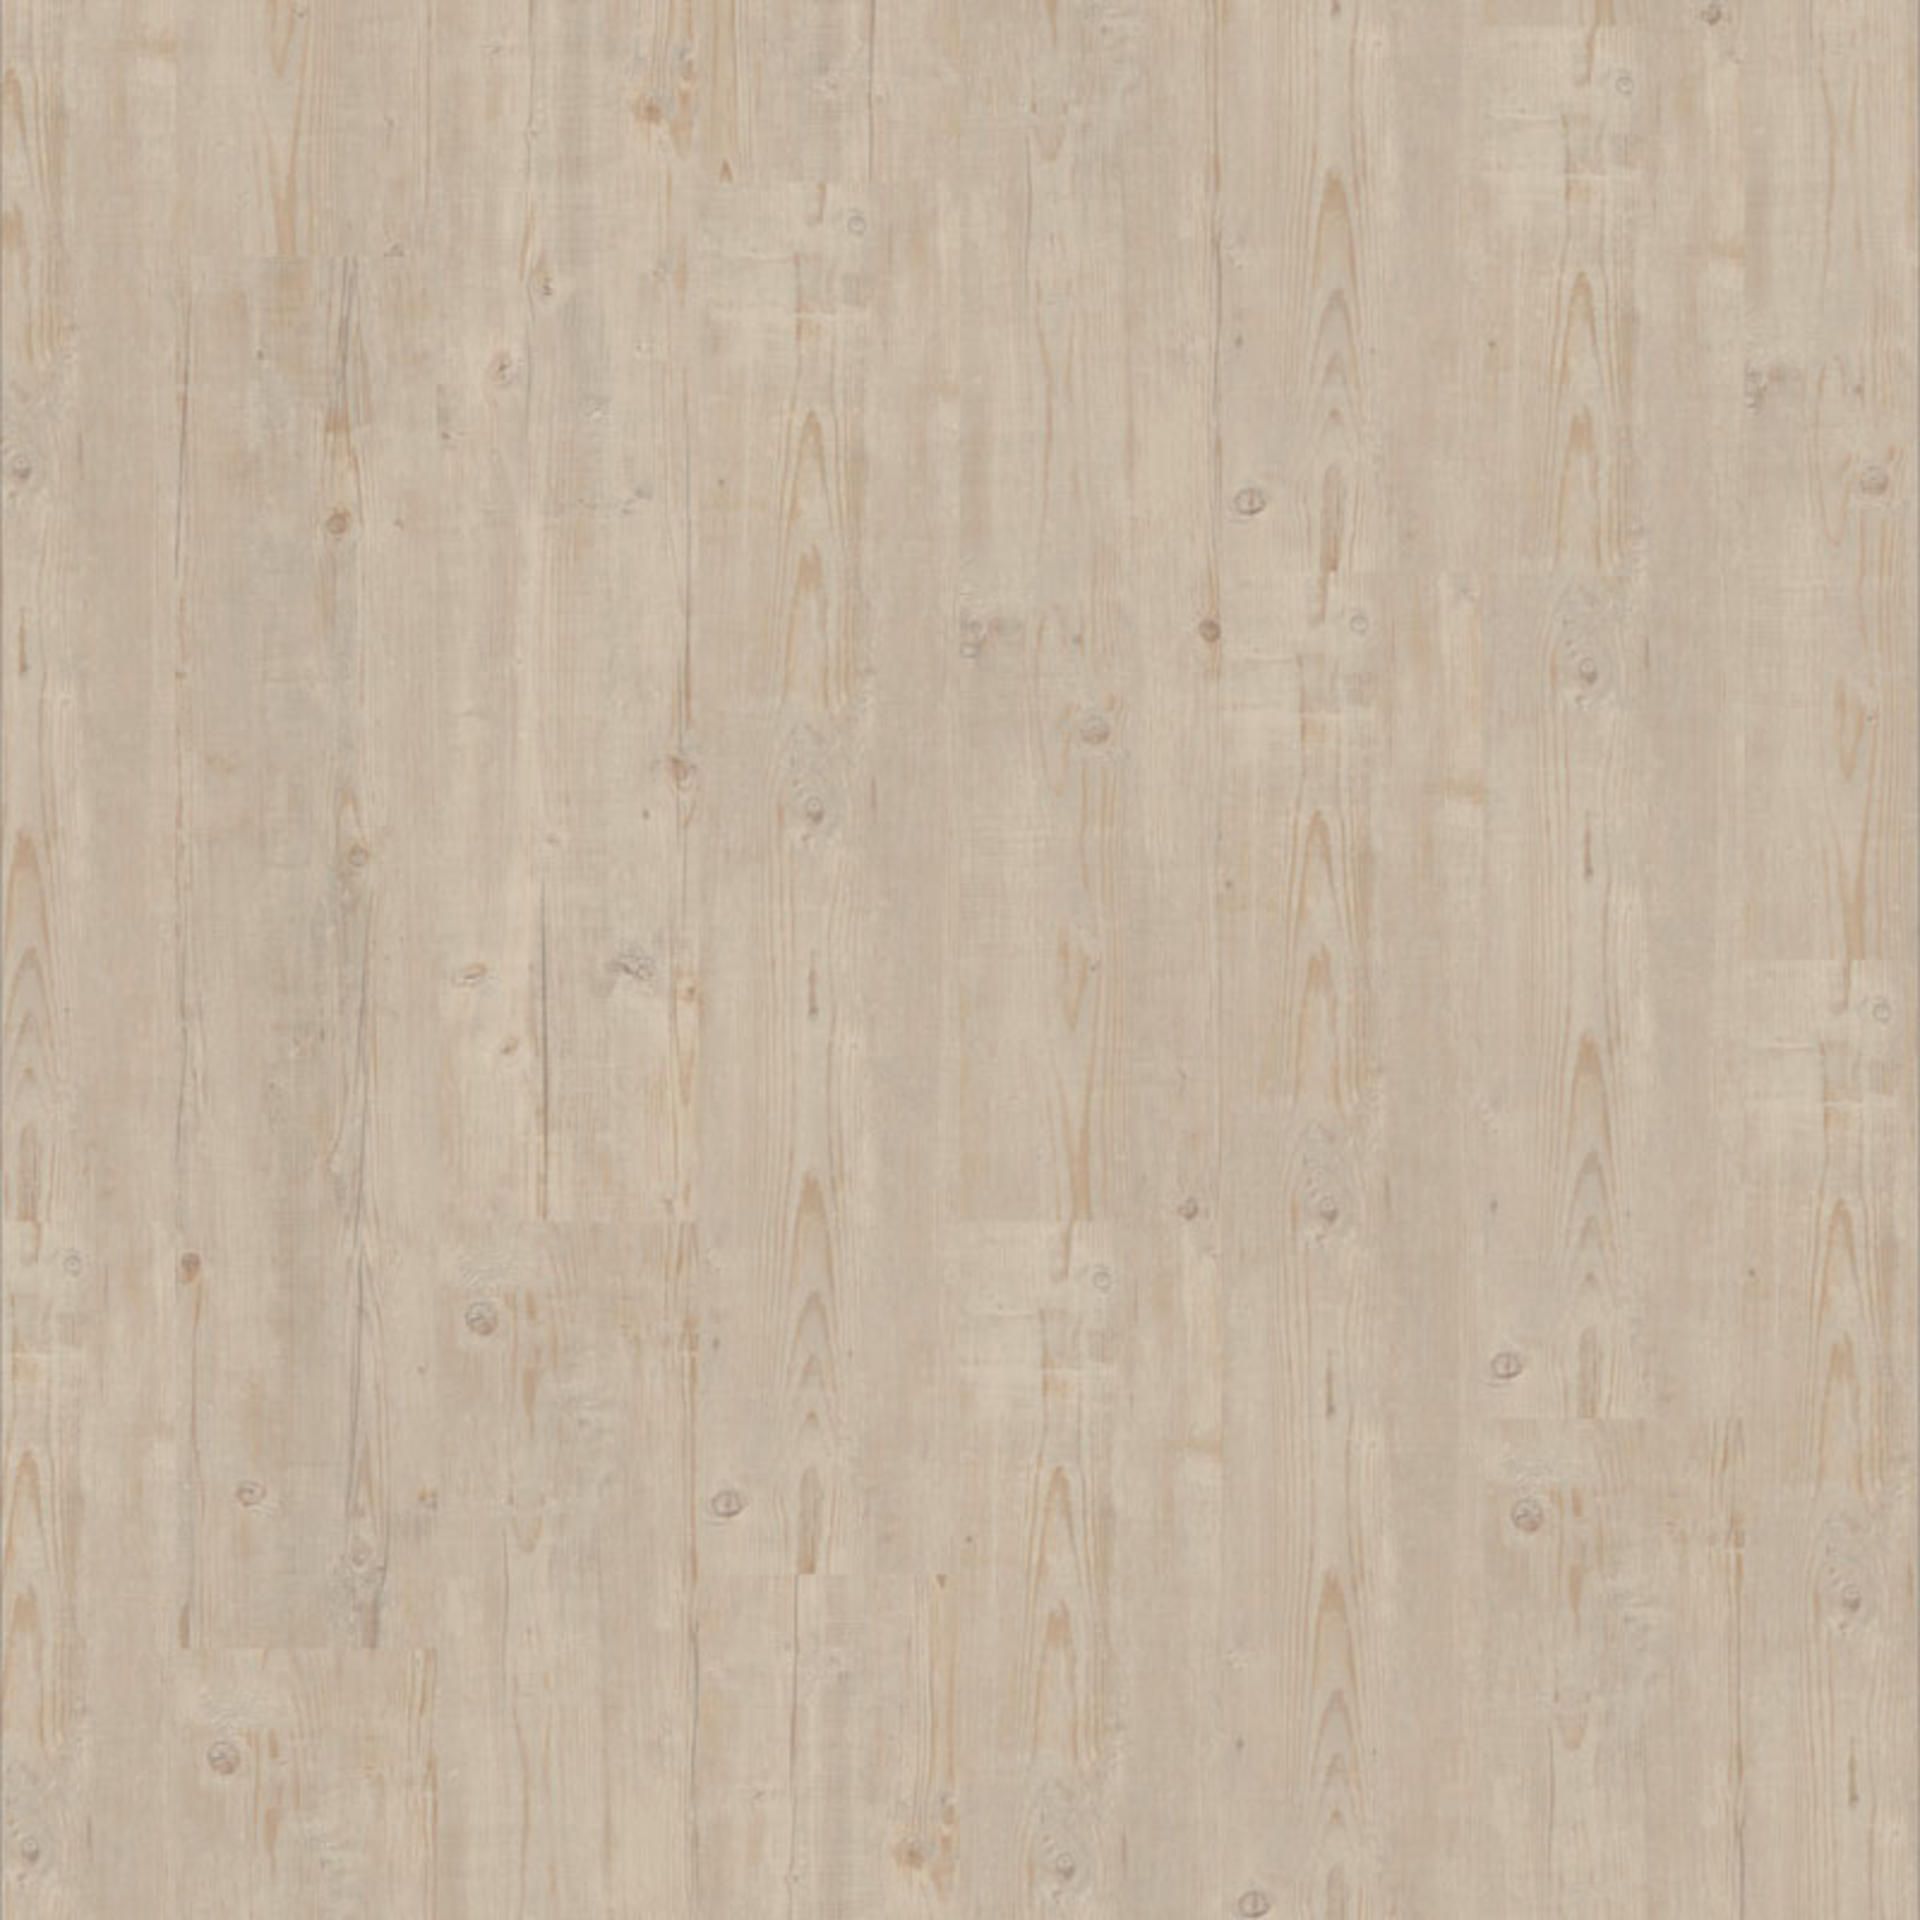 Tarkett iD Essential 30 Vinylplanke Washed Pine BEIGE beige 24707005